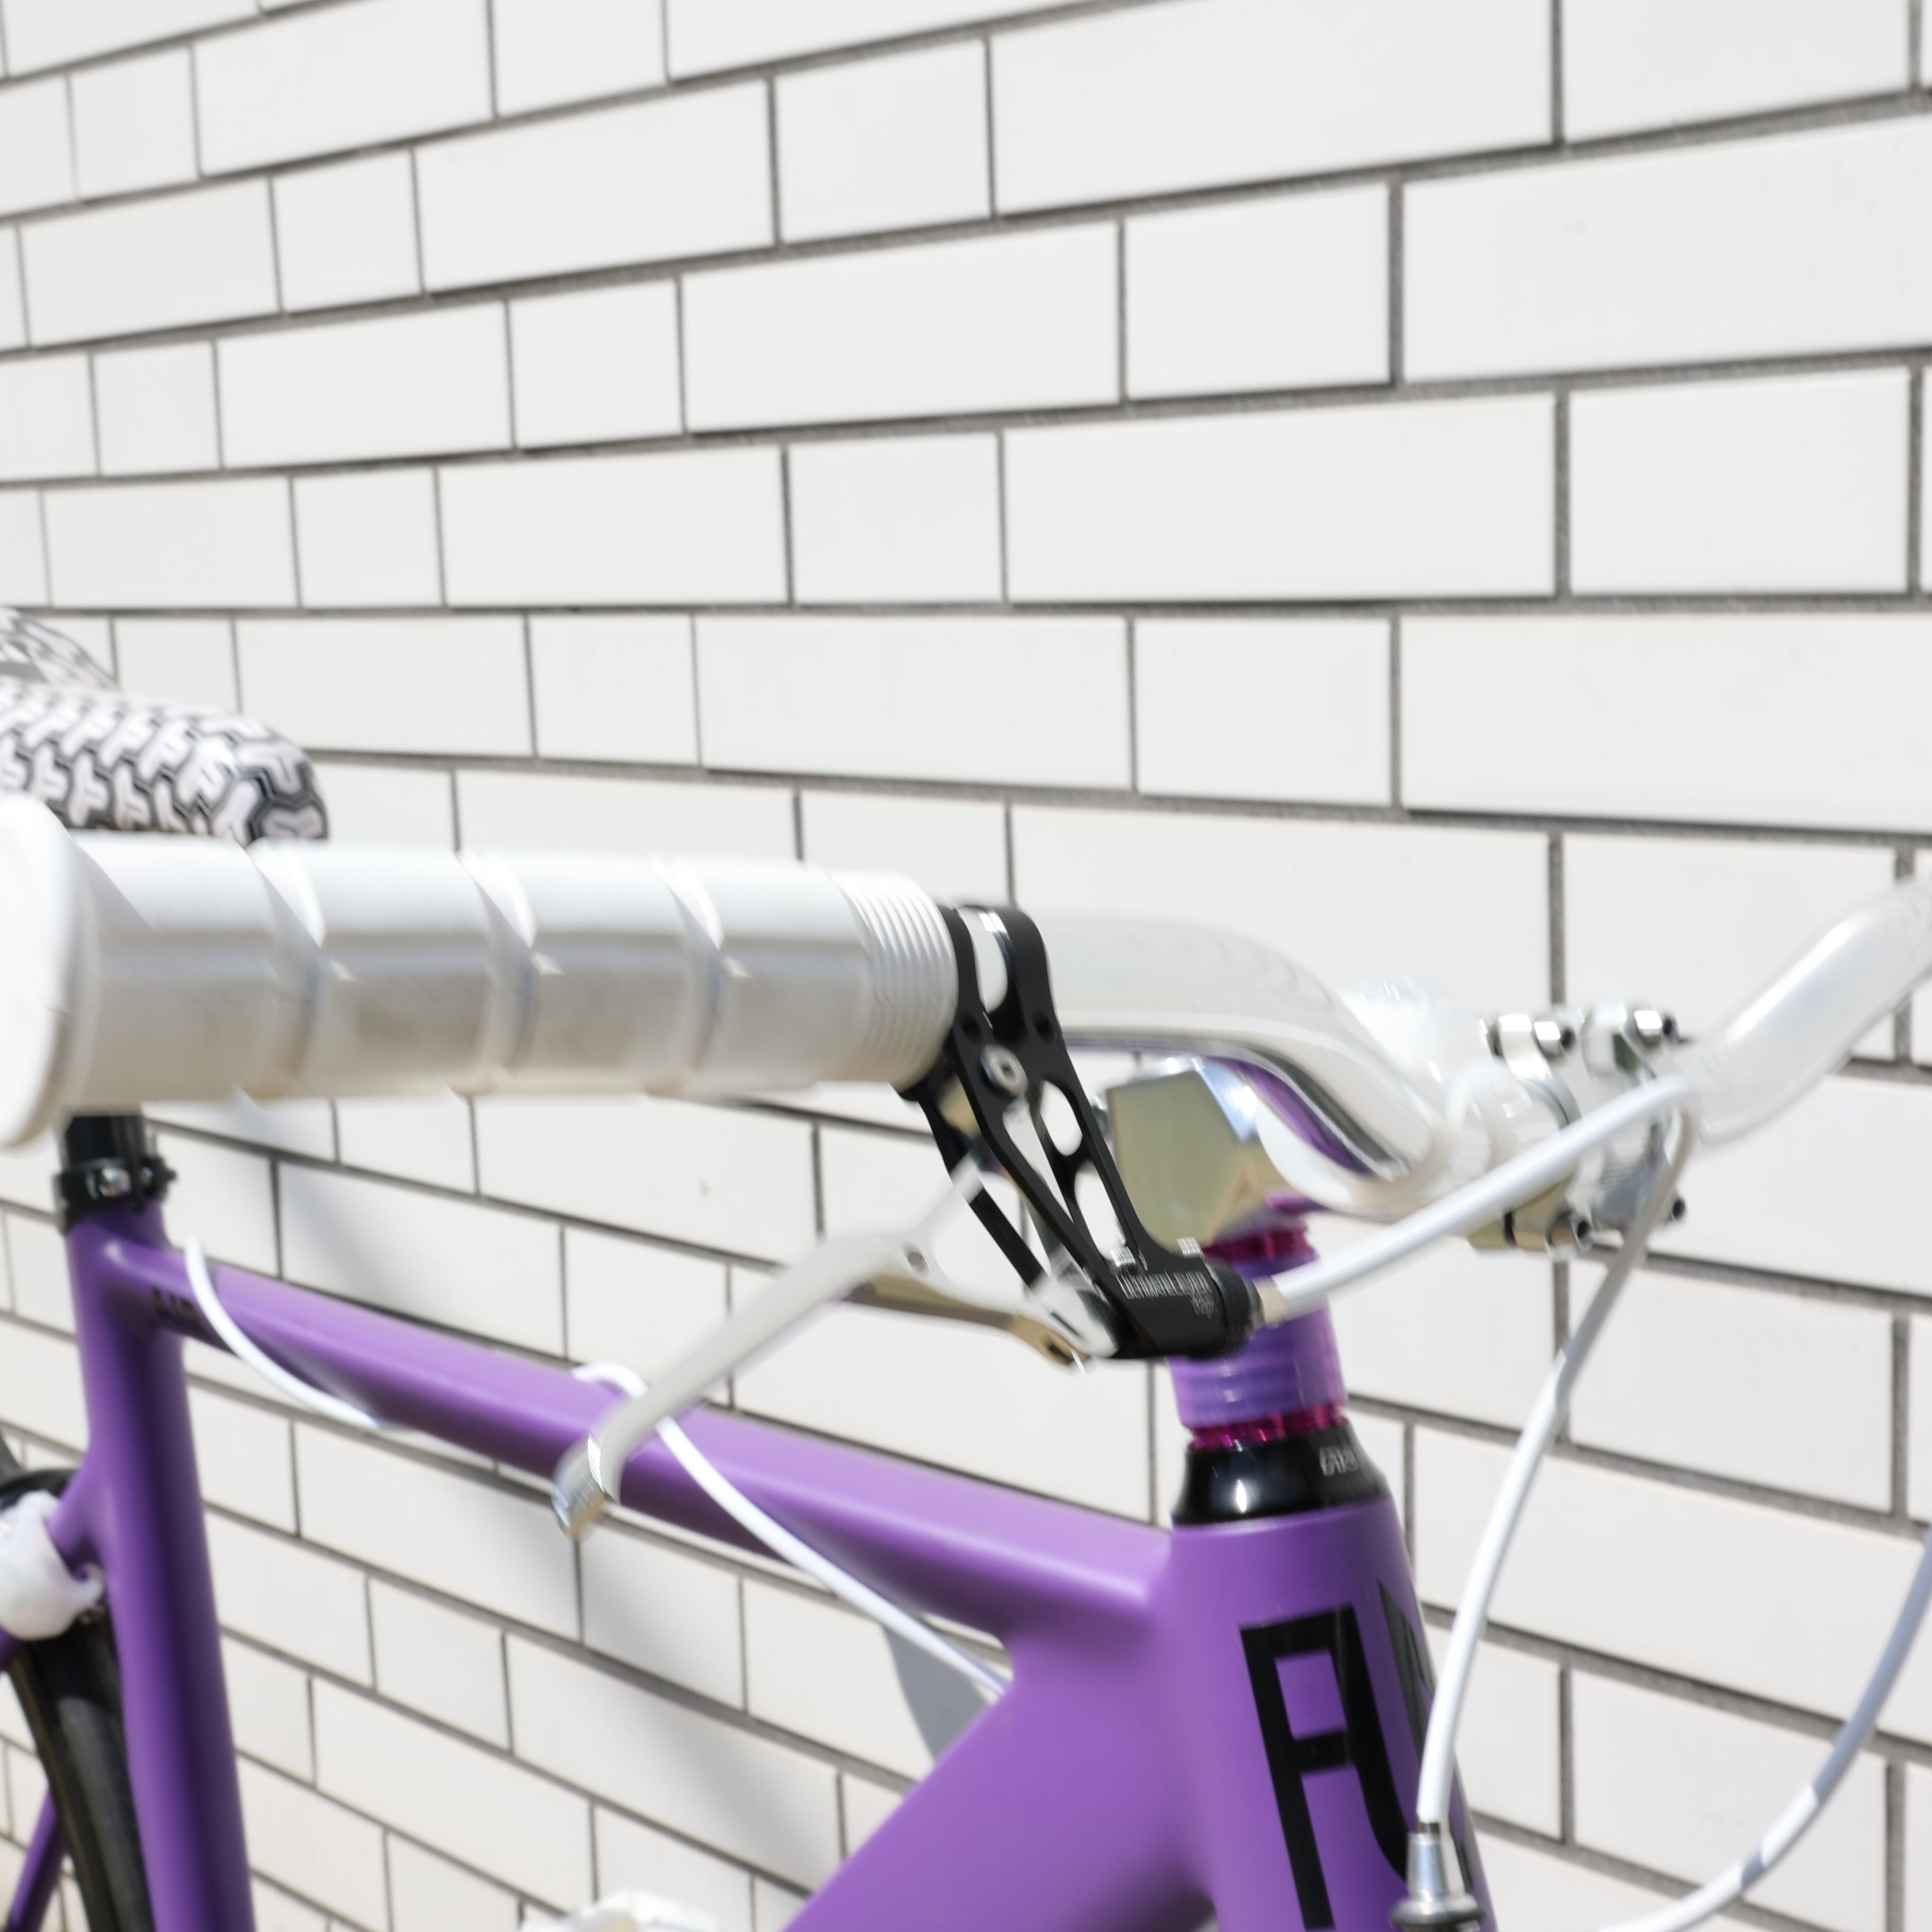 【新品】FUN 26××1.95 サイズ54 パープル 紫 ピストバイク 自転車